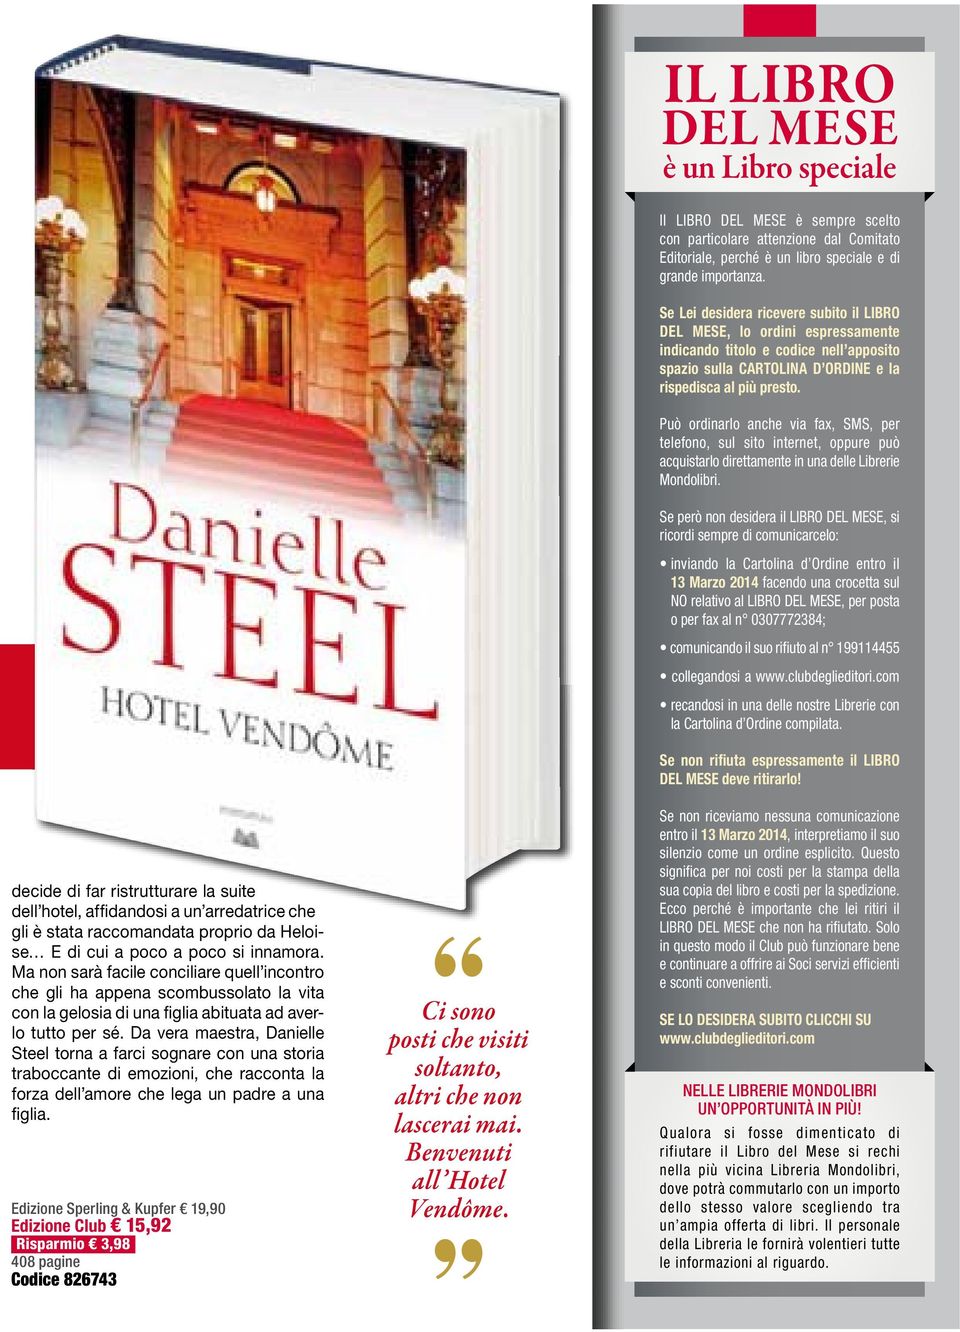 Da vera maestra, Danielle Steel torna a farci sognare con una storia traboccante di emozioni, che racconta la forza dell amore che lega un padre a una figlia.